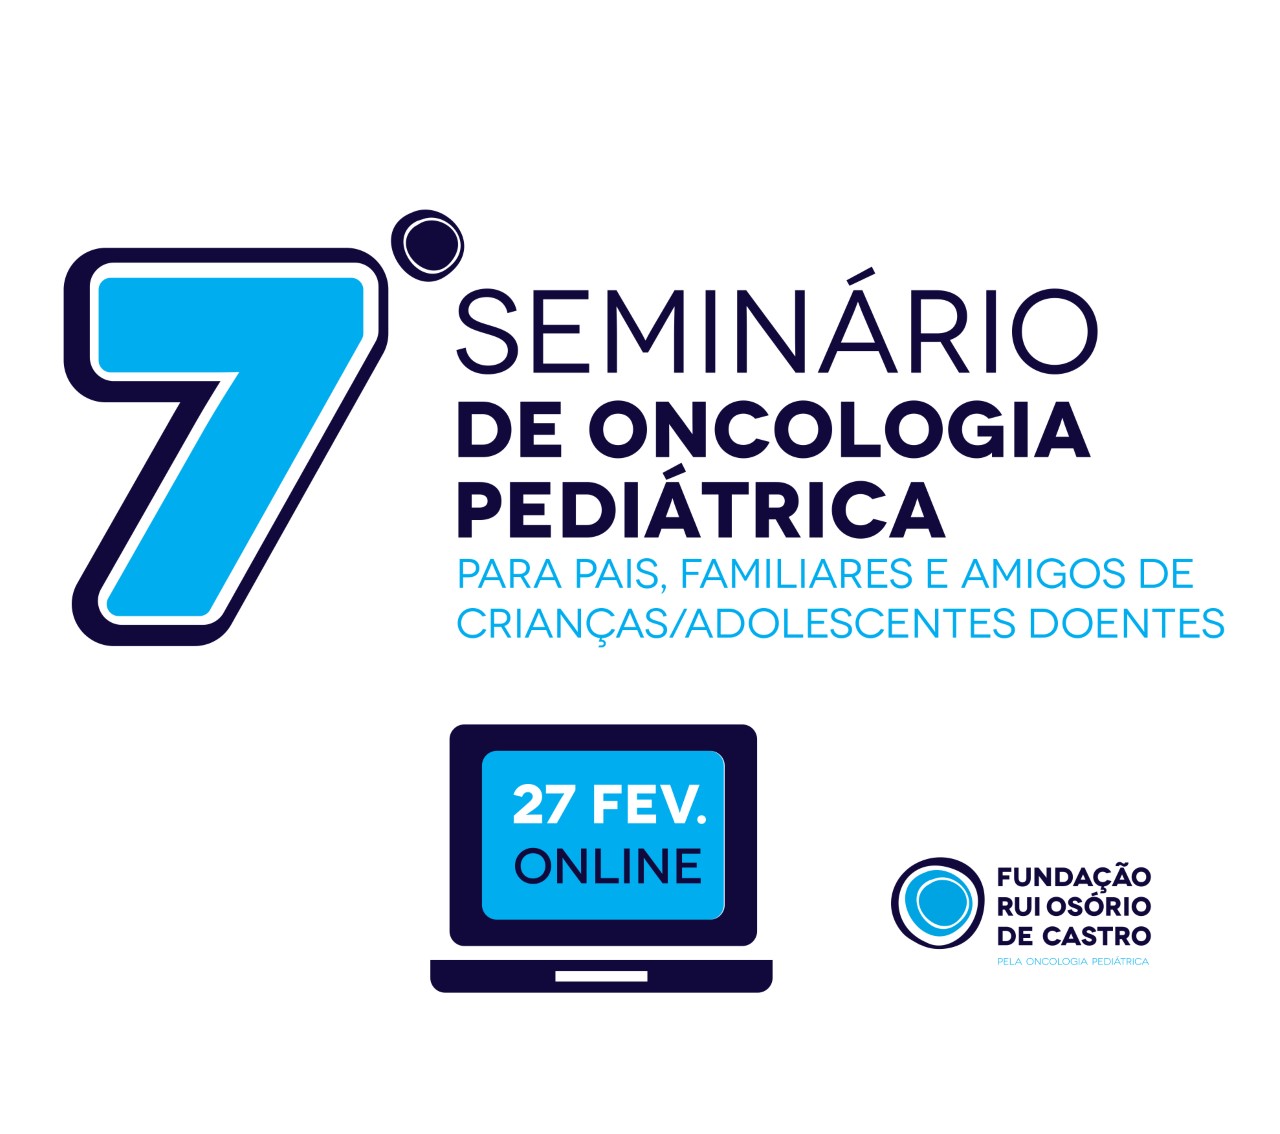 Seminário Online de Oncologia Pediátrica irá realizar-se no dia 27 de Fevereiro